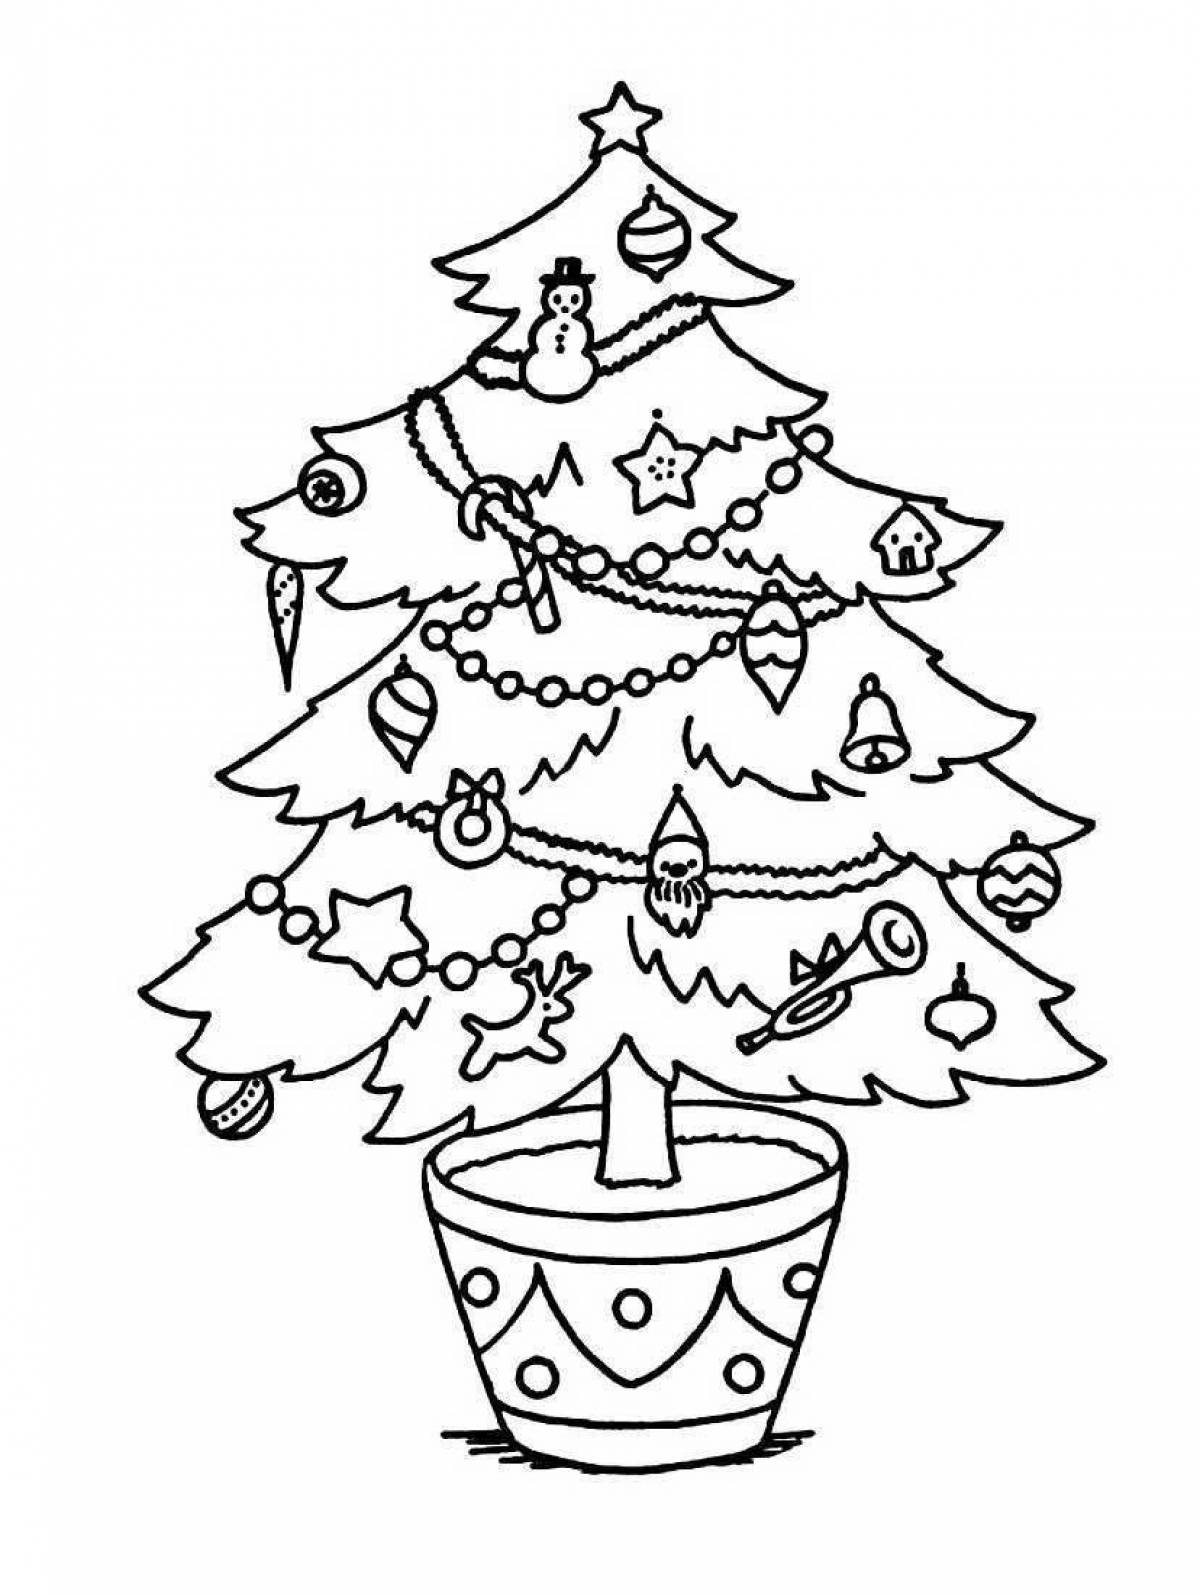 Великолепная раскраска «рождественская елка»